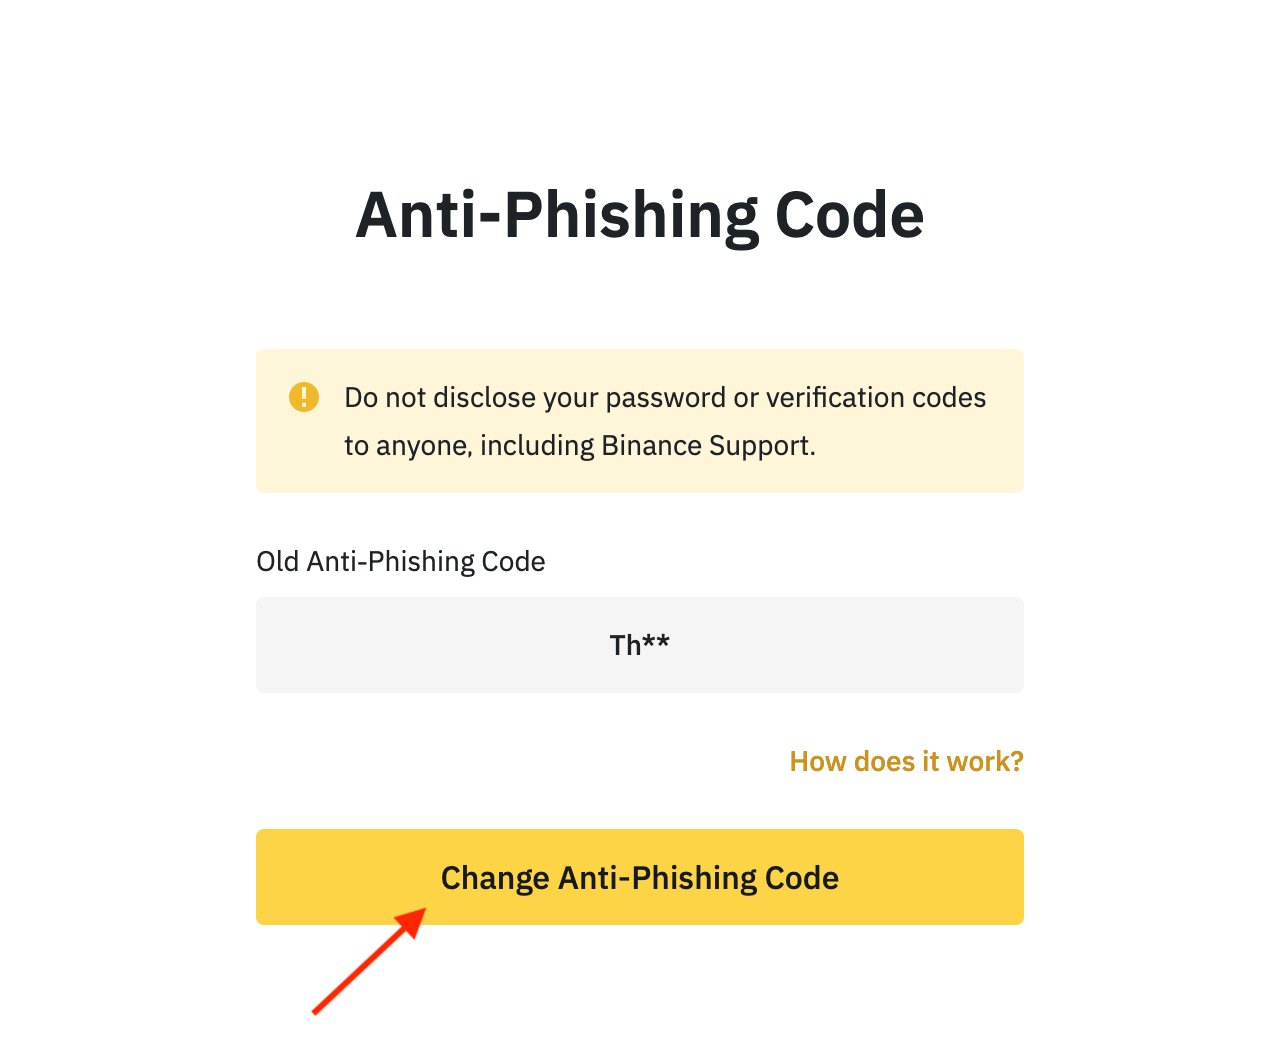 Chọn Change Anti – Phising Code